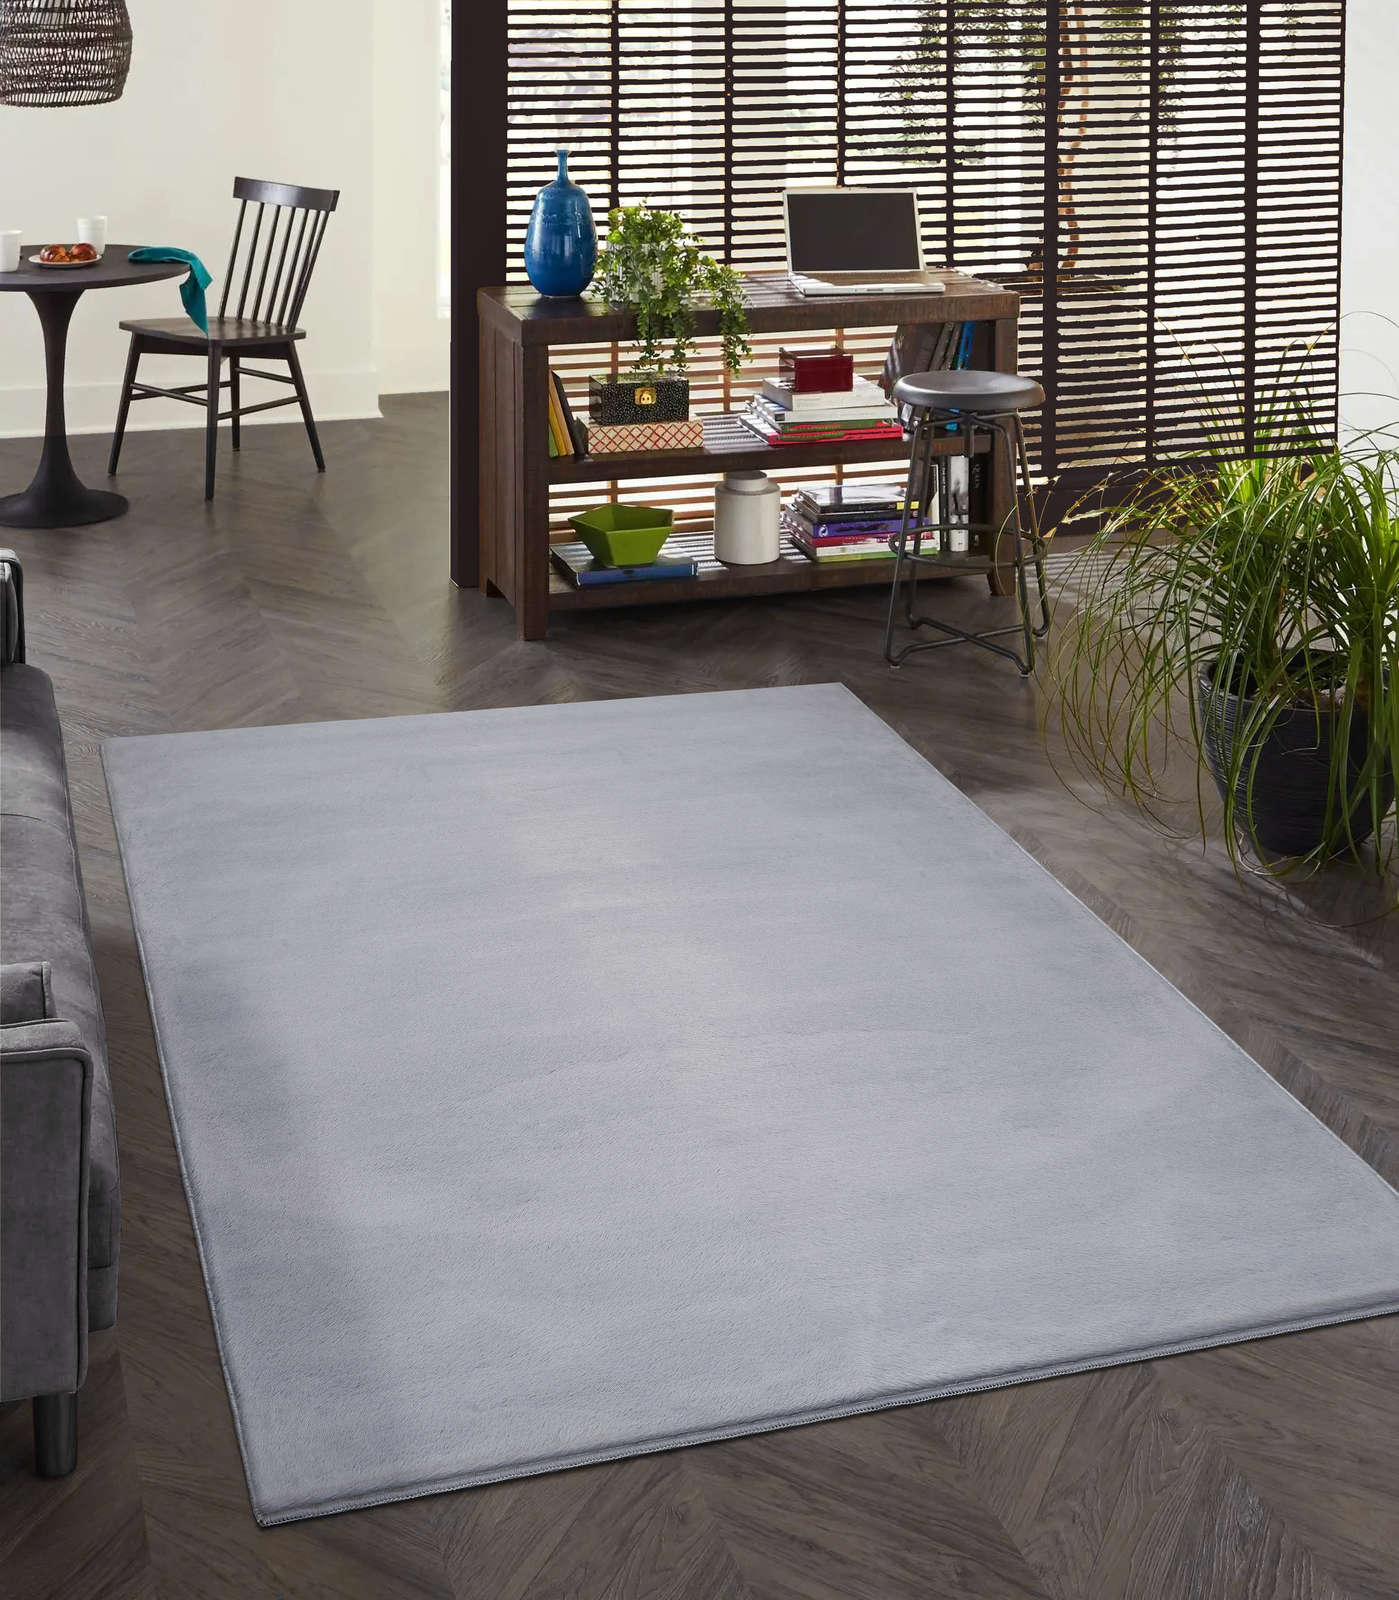             Comfortabel hoogpolig tapijt in zachtgrijs - 340 x 240 cm
        